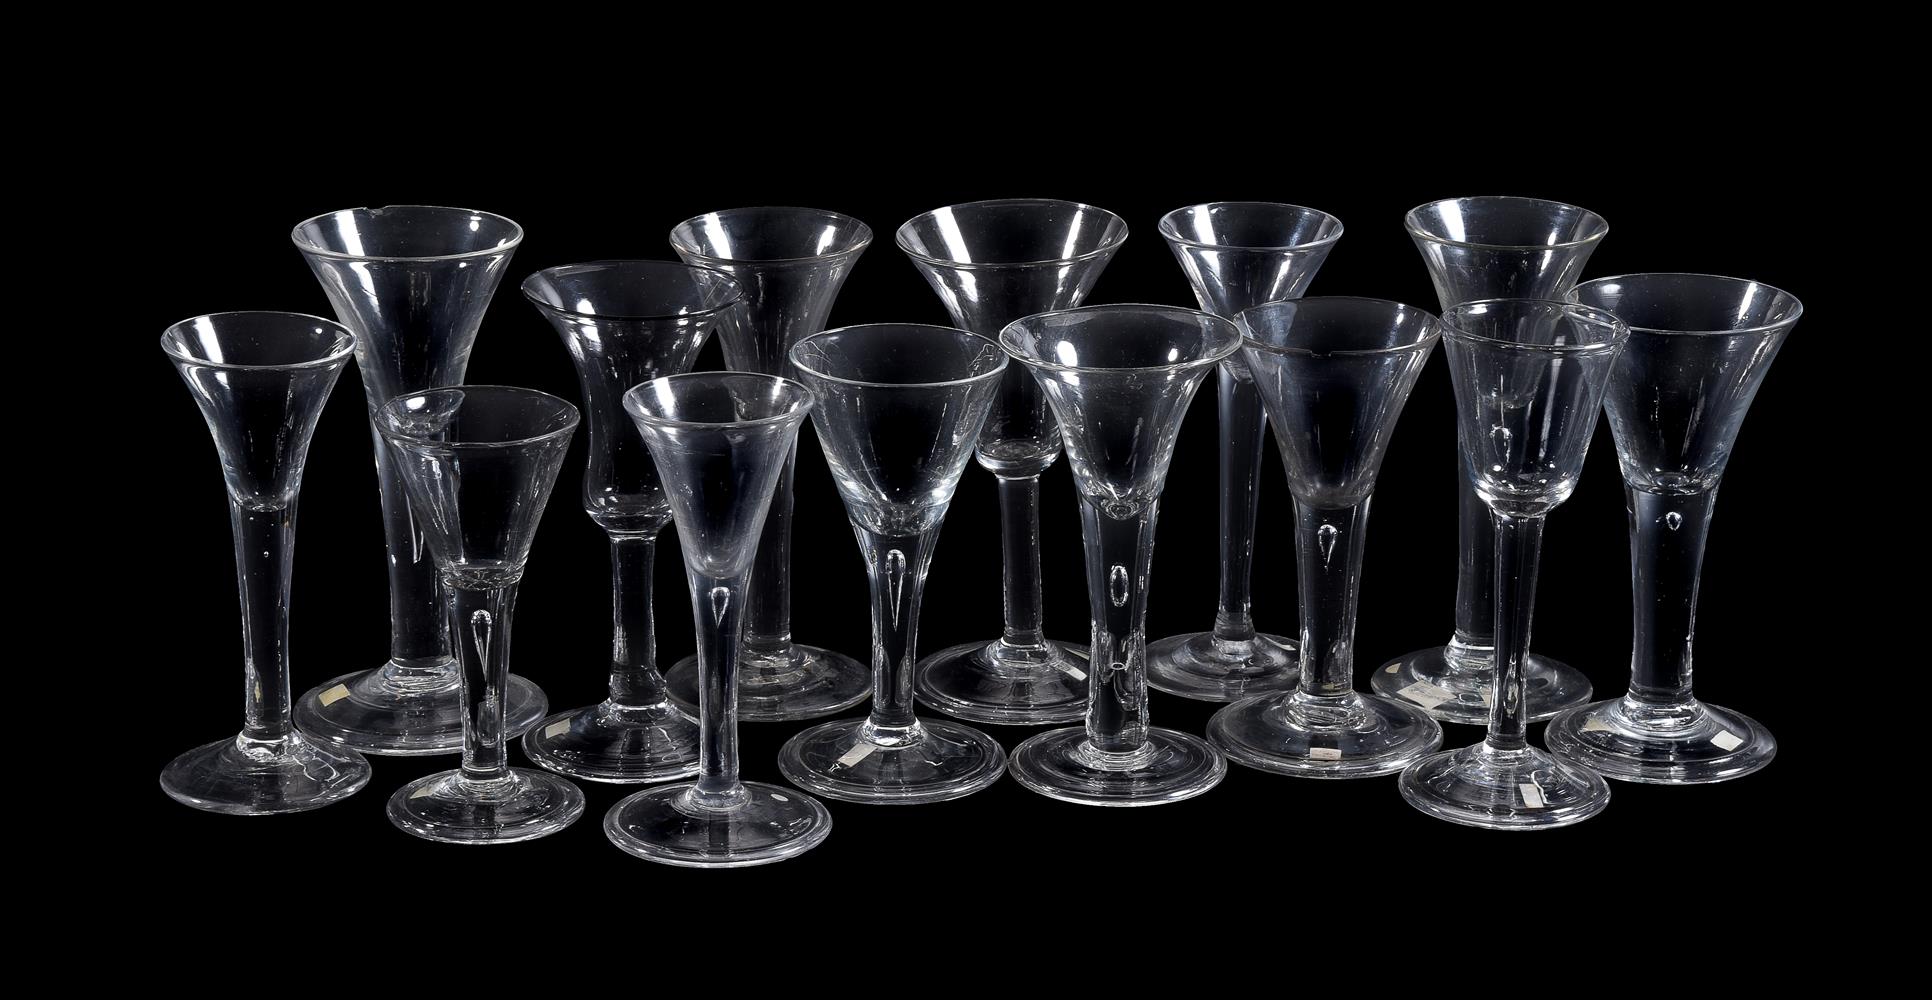 Fourteen various plain-stemmed wine glasses